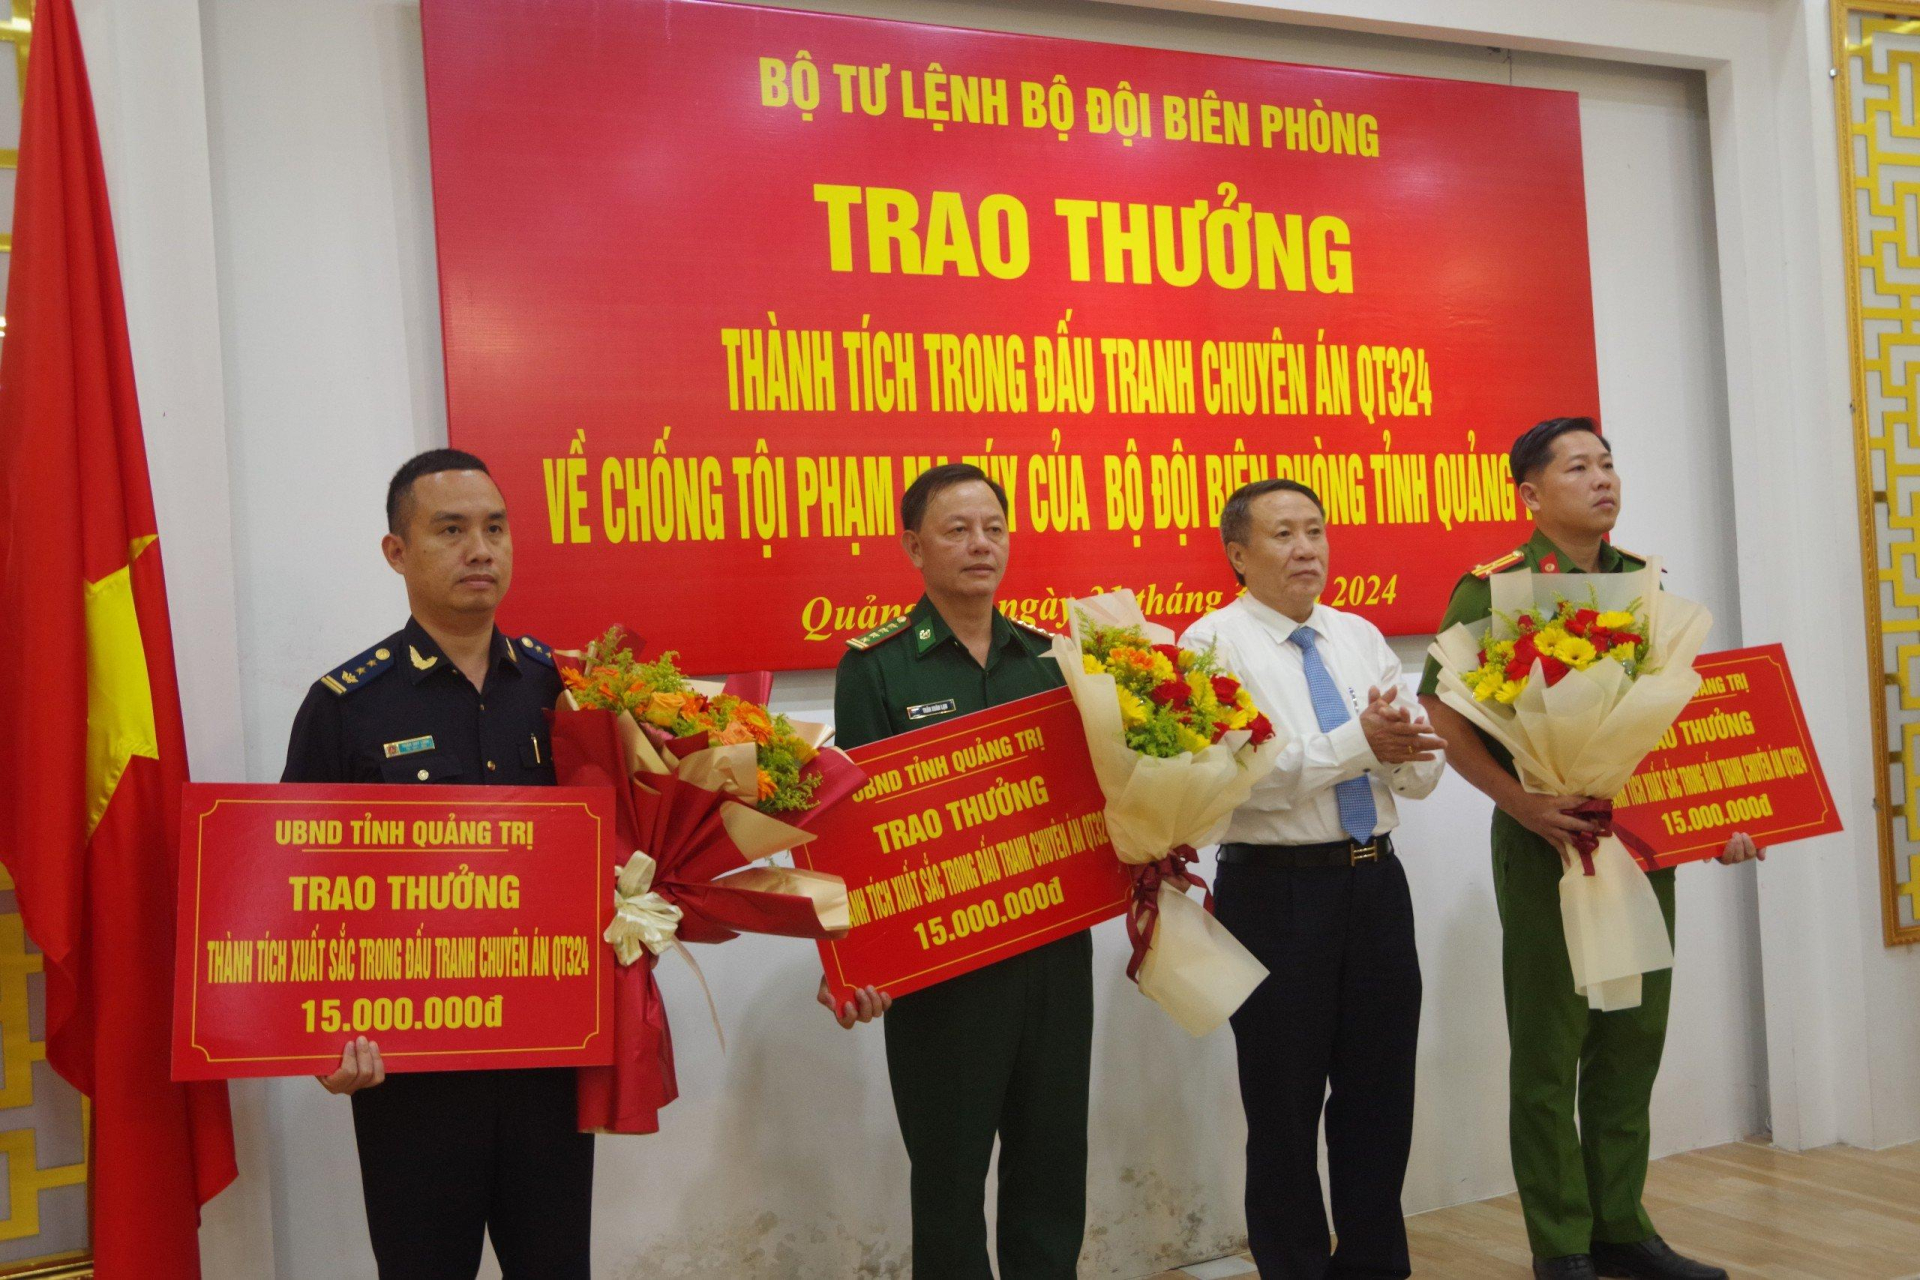 Bộ Tư Lệnh Bộ đội Biên phòng tỉnh Quảng Trị và UBND tỉnh Quảng Trị trao Bằng khen và tiền thưởng cho lực lượng phối hợp tham gia phá án.